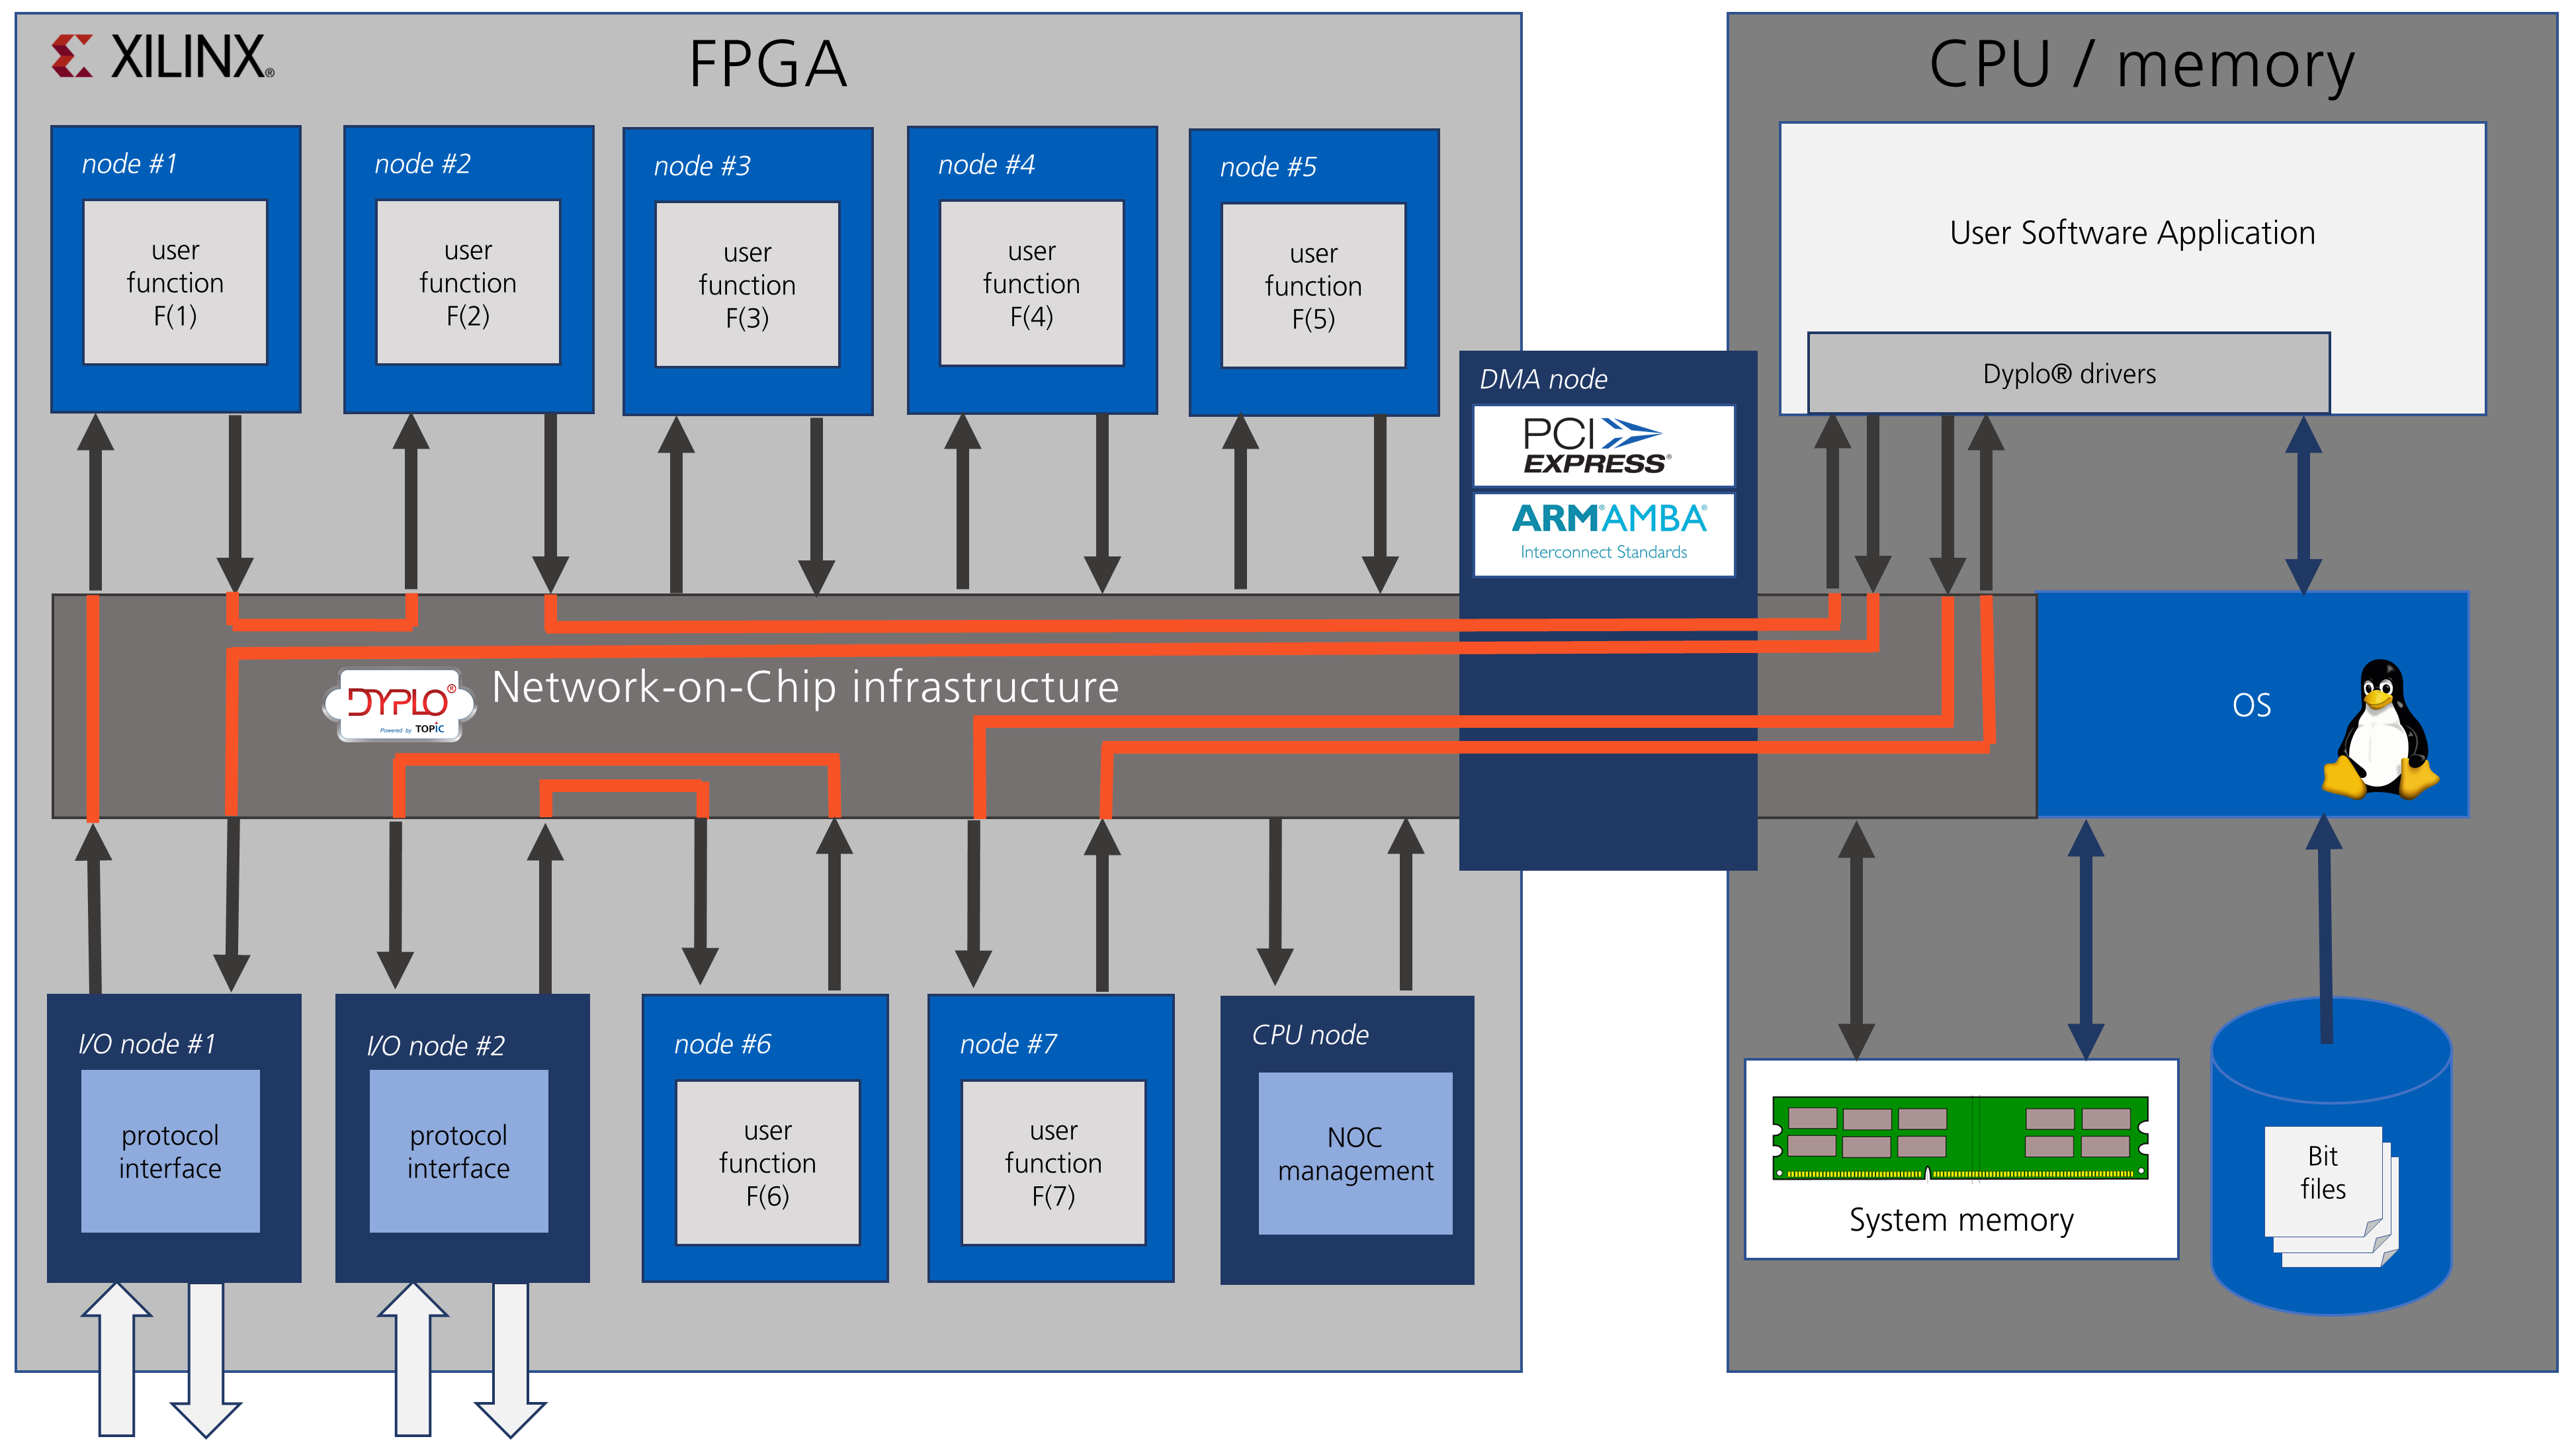 FPGA logic for multiple functions